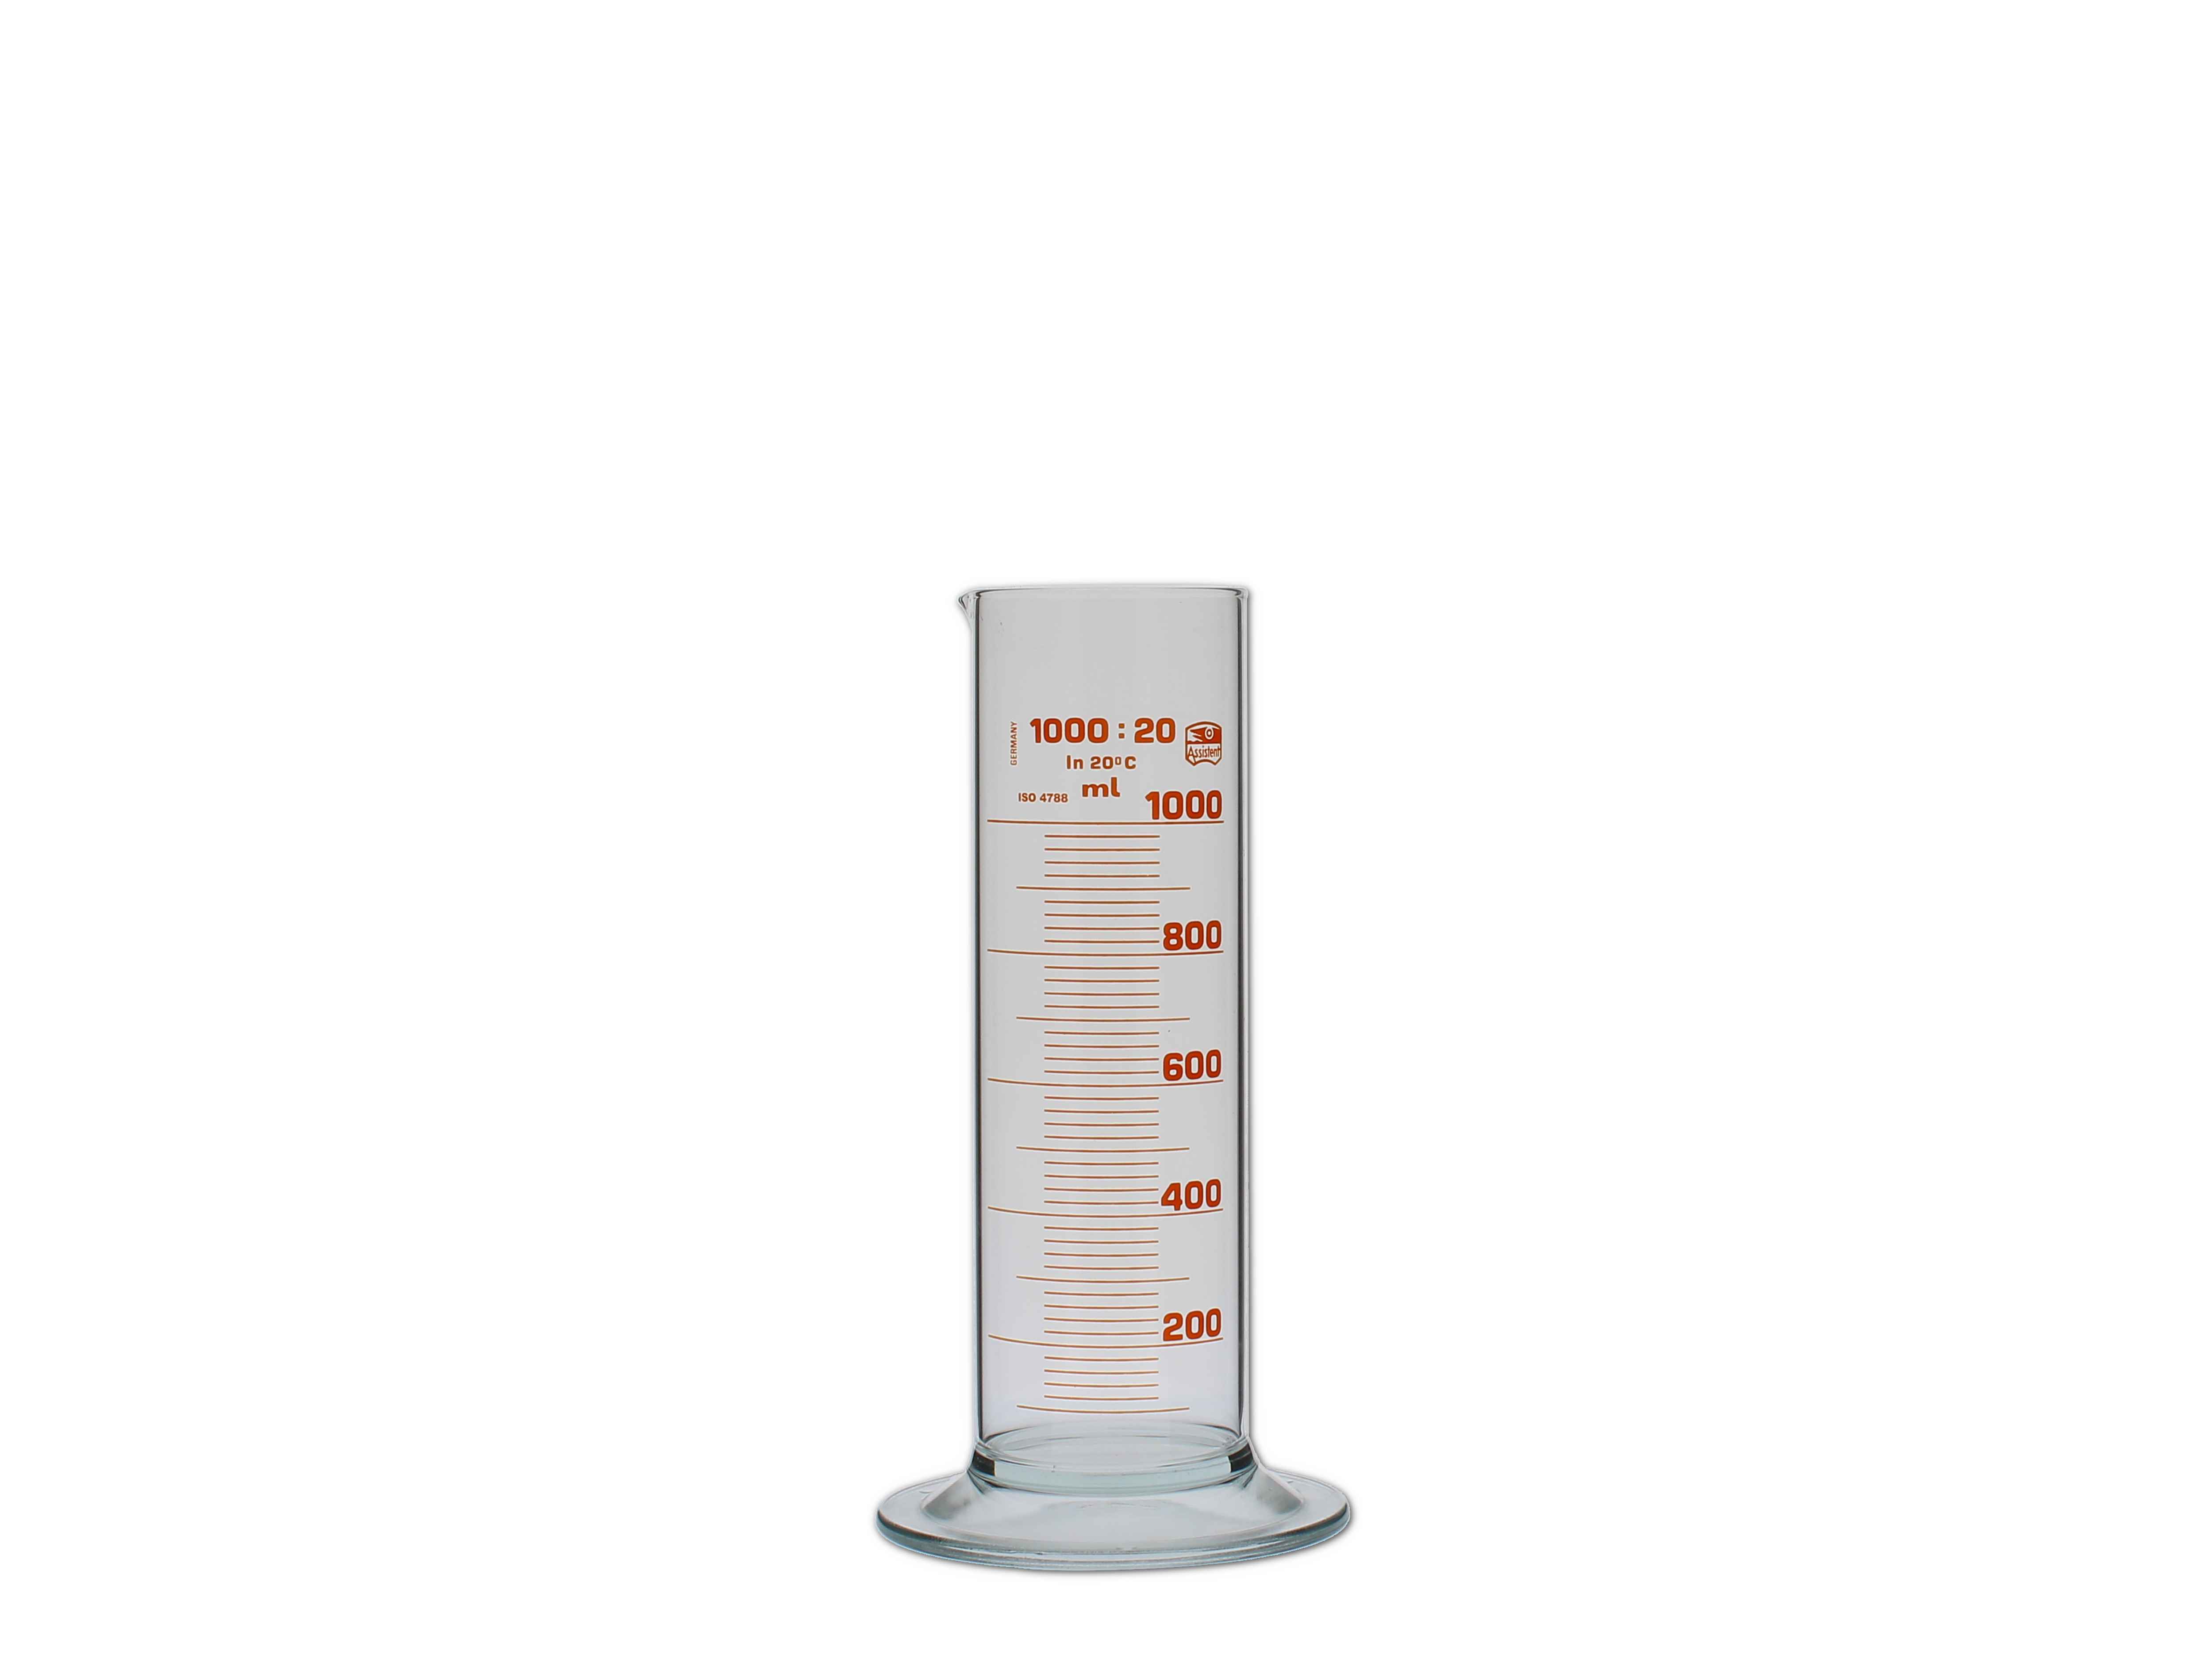    Messzylinder, Glas, graduiert - 1000ml (niedere Form)